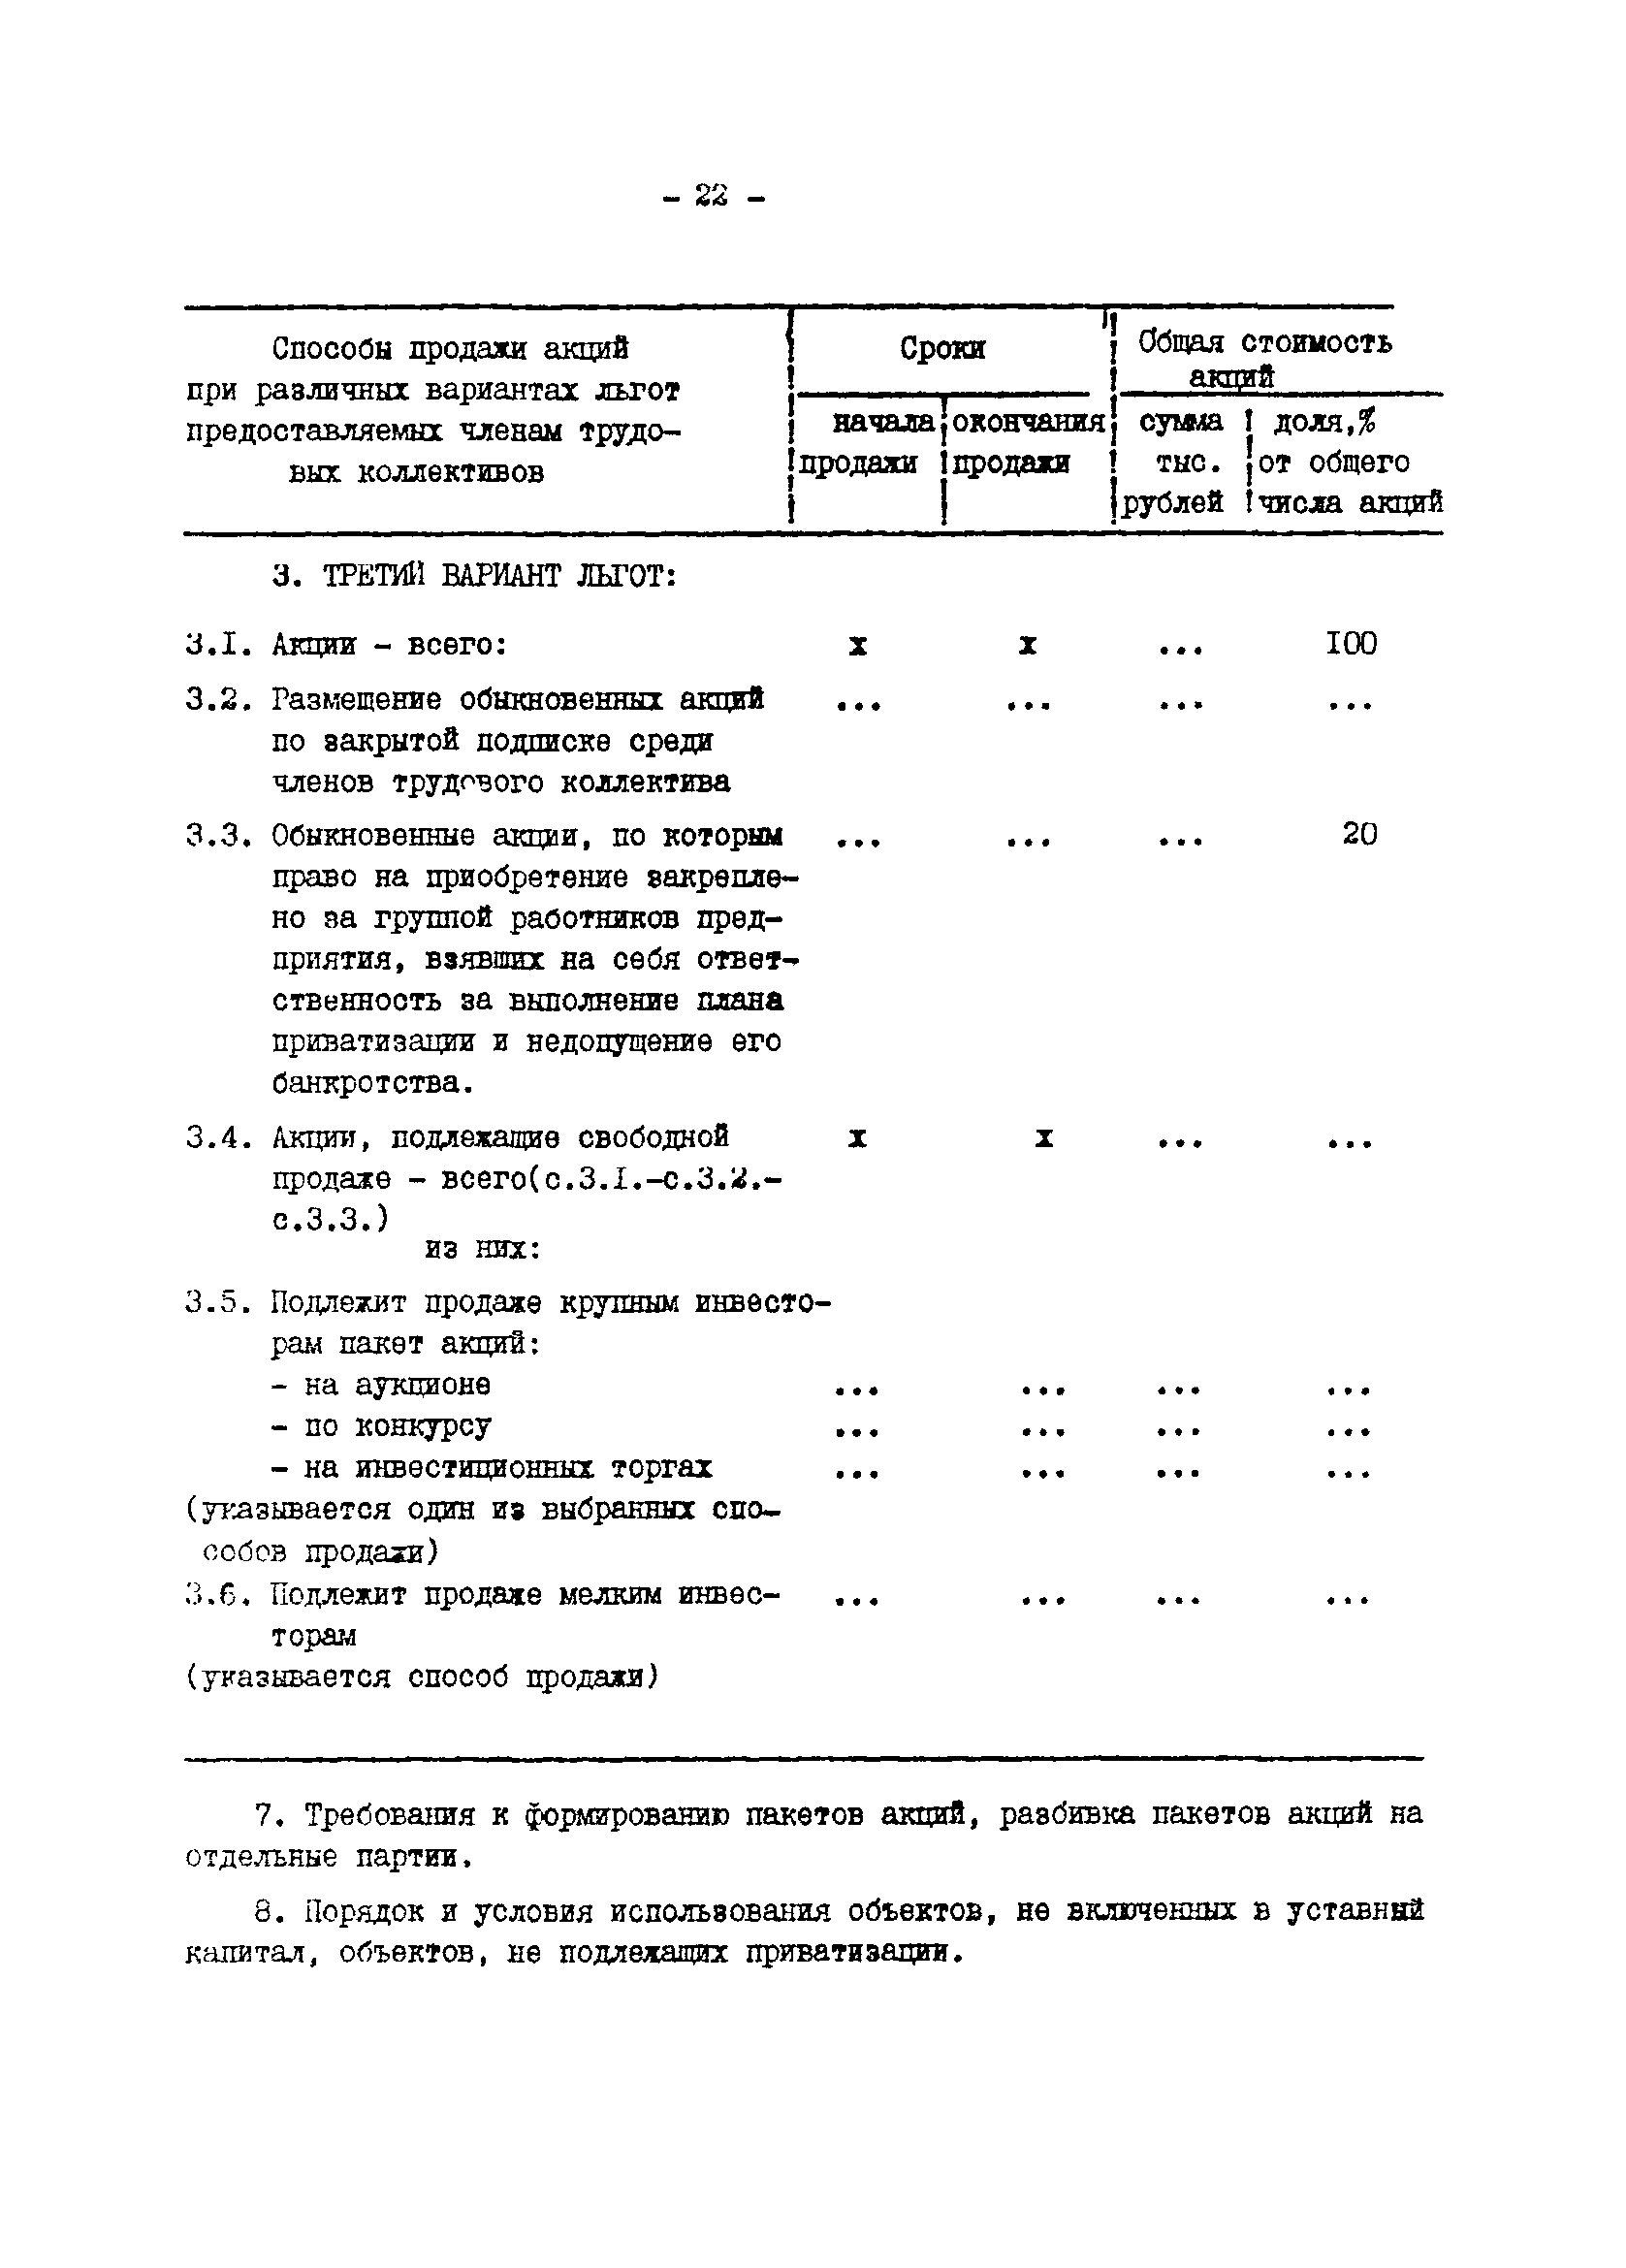 Методические указания 8-92